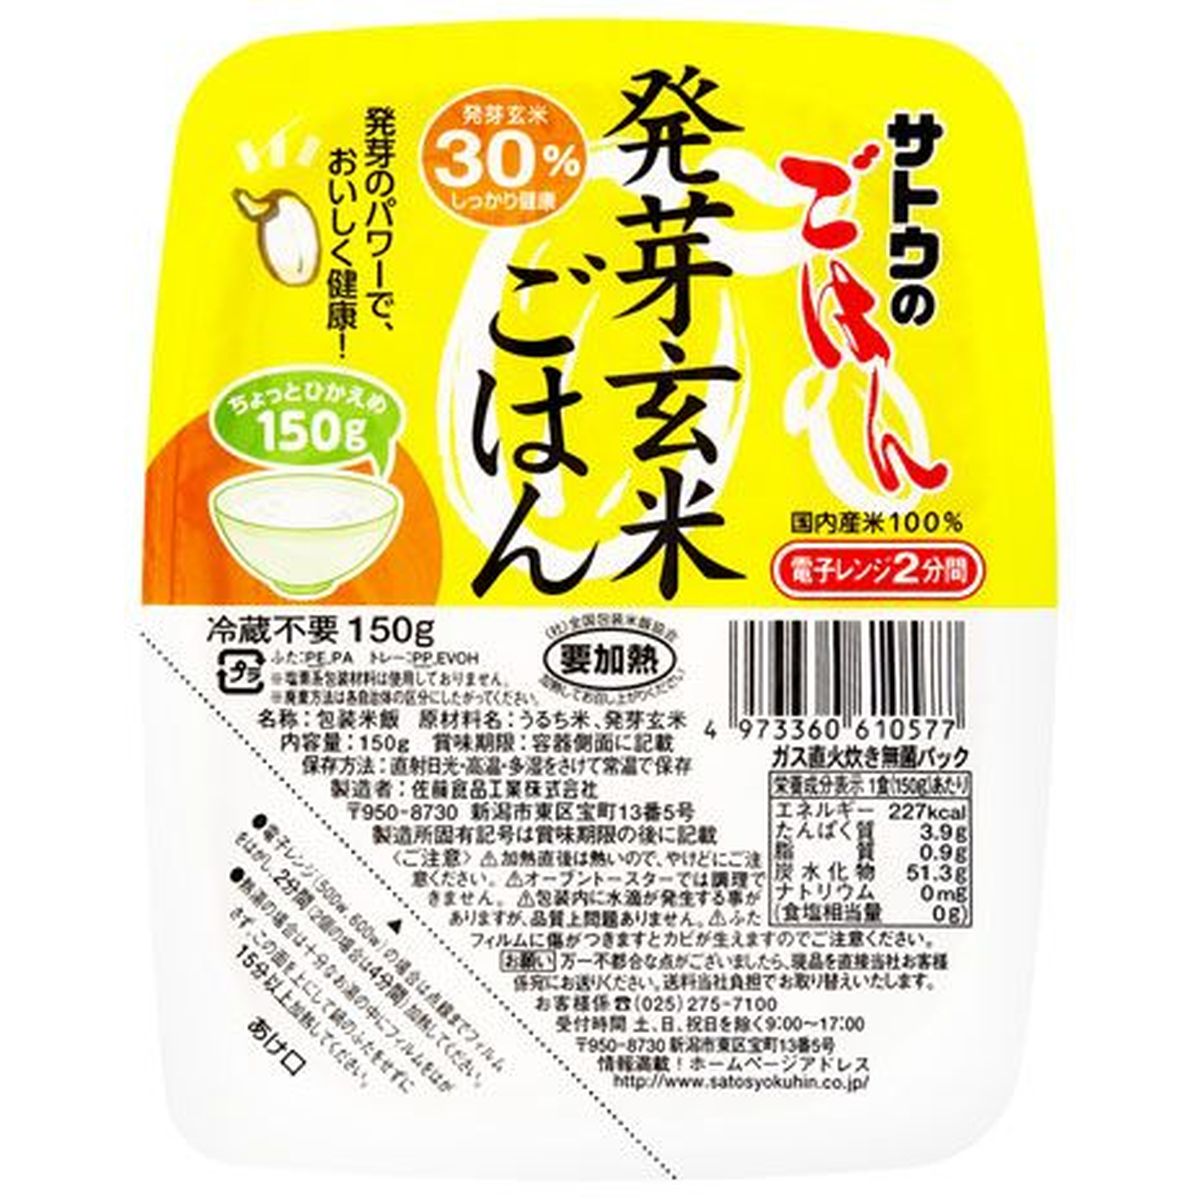 【6個入リ】サトウ サトウノゴハン 発芽玄米ゴハン 150g